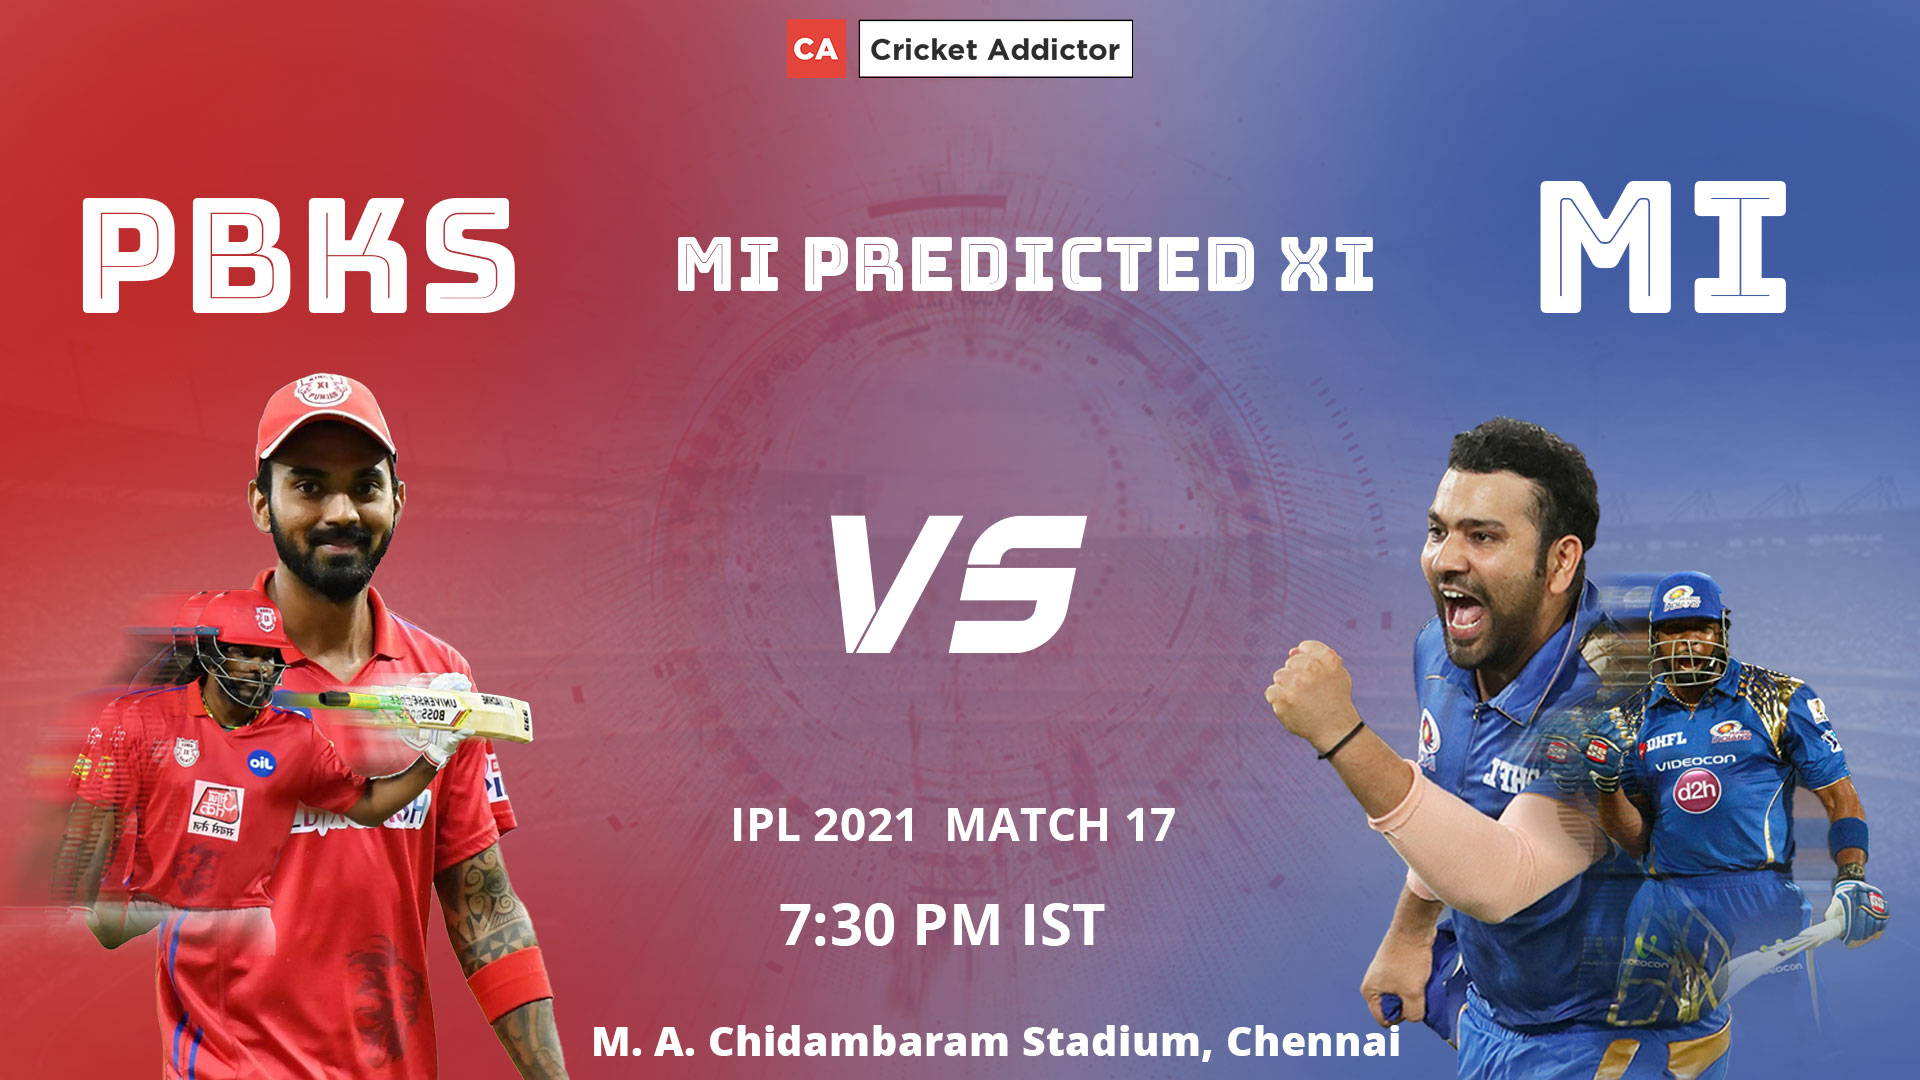 Mumbai Indians, MI, IPL 2021, predicted playing XI, playing XI, PBKS vs MI